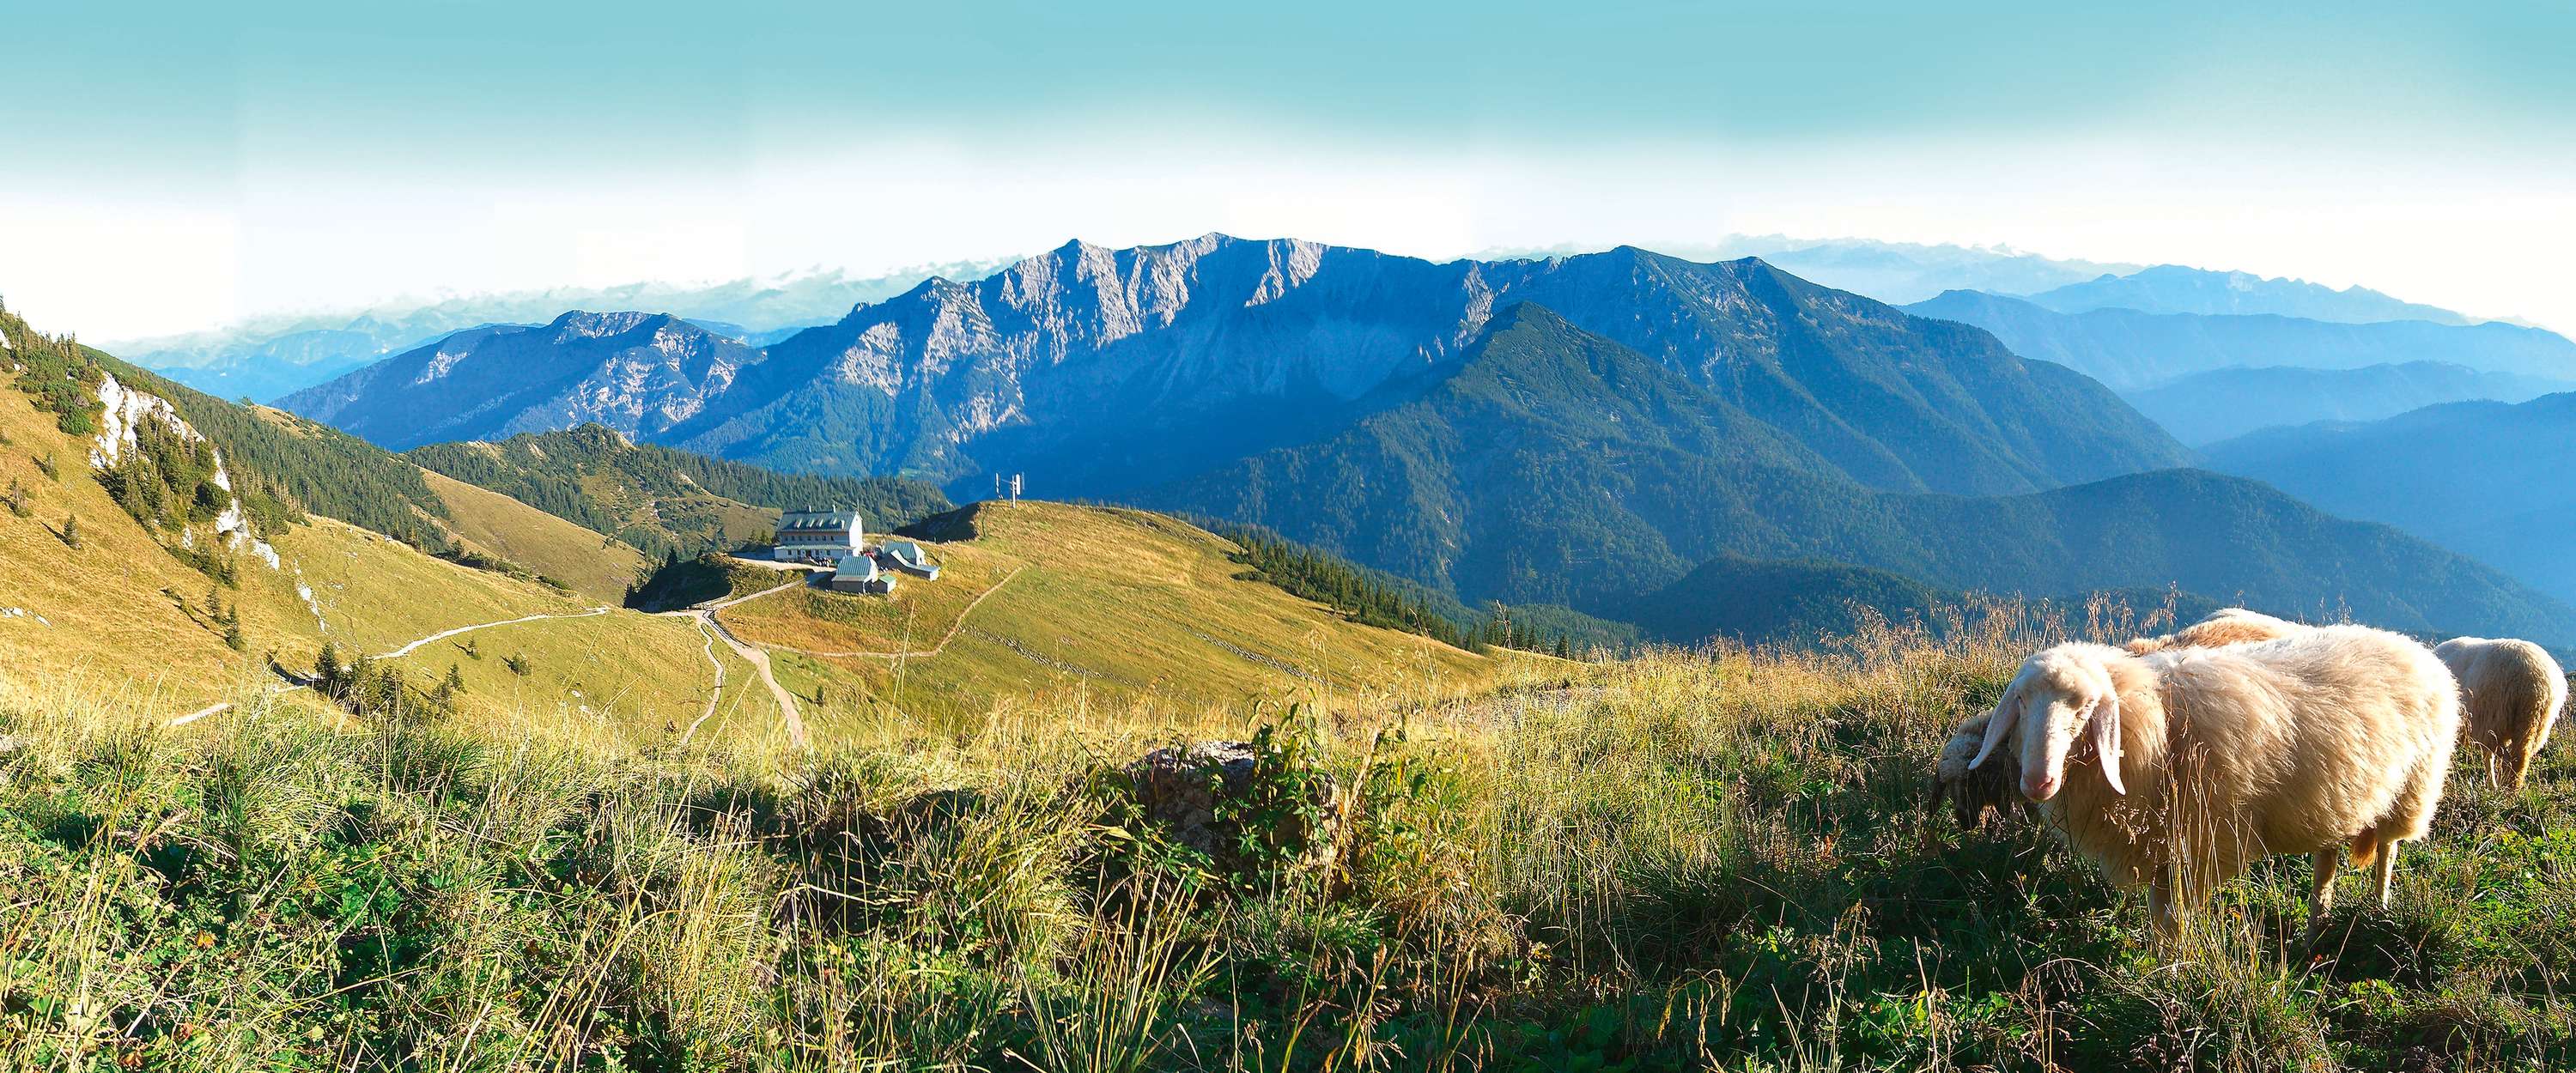             Papier peint panoramique paysage de montagne avec vue panoramique
        